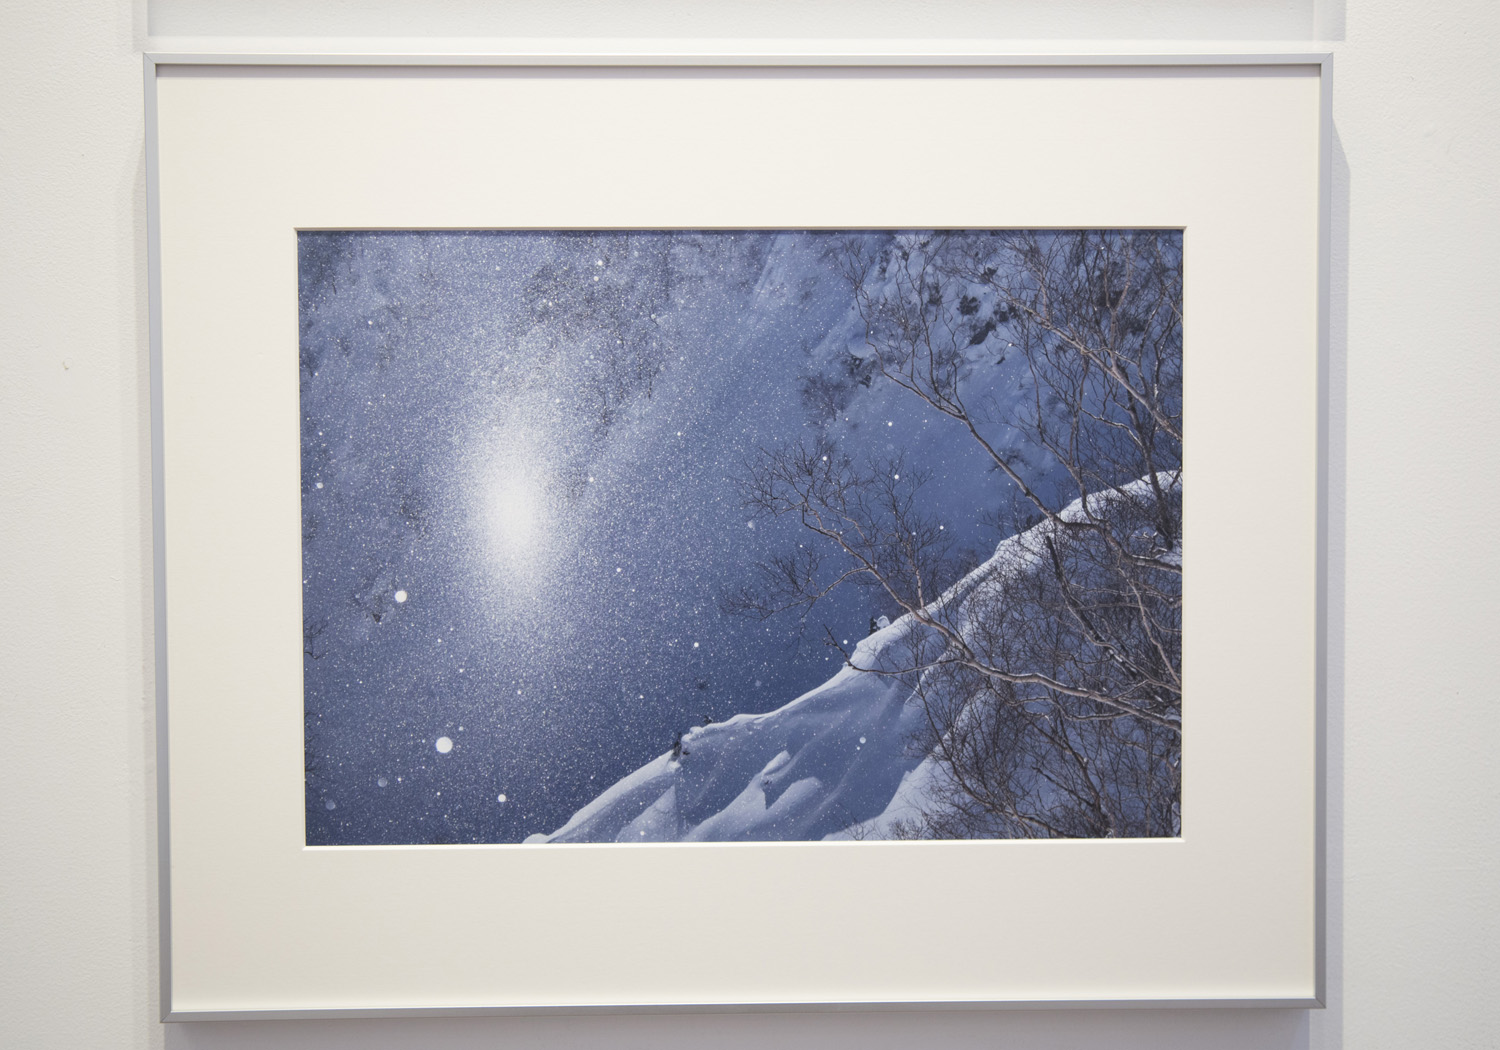 遠藤 励氏の写真にはどこか暖かい温もりと優しさを感じることができる。雪山の日常の姿も彼が撮影することでアートとして表現されていく